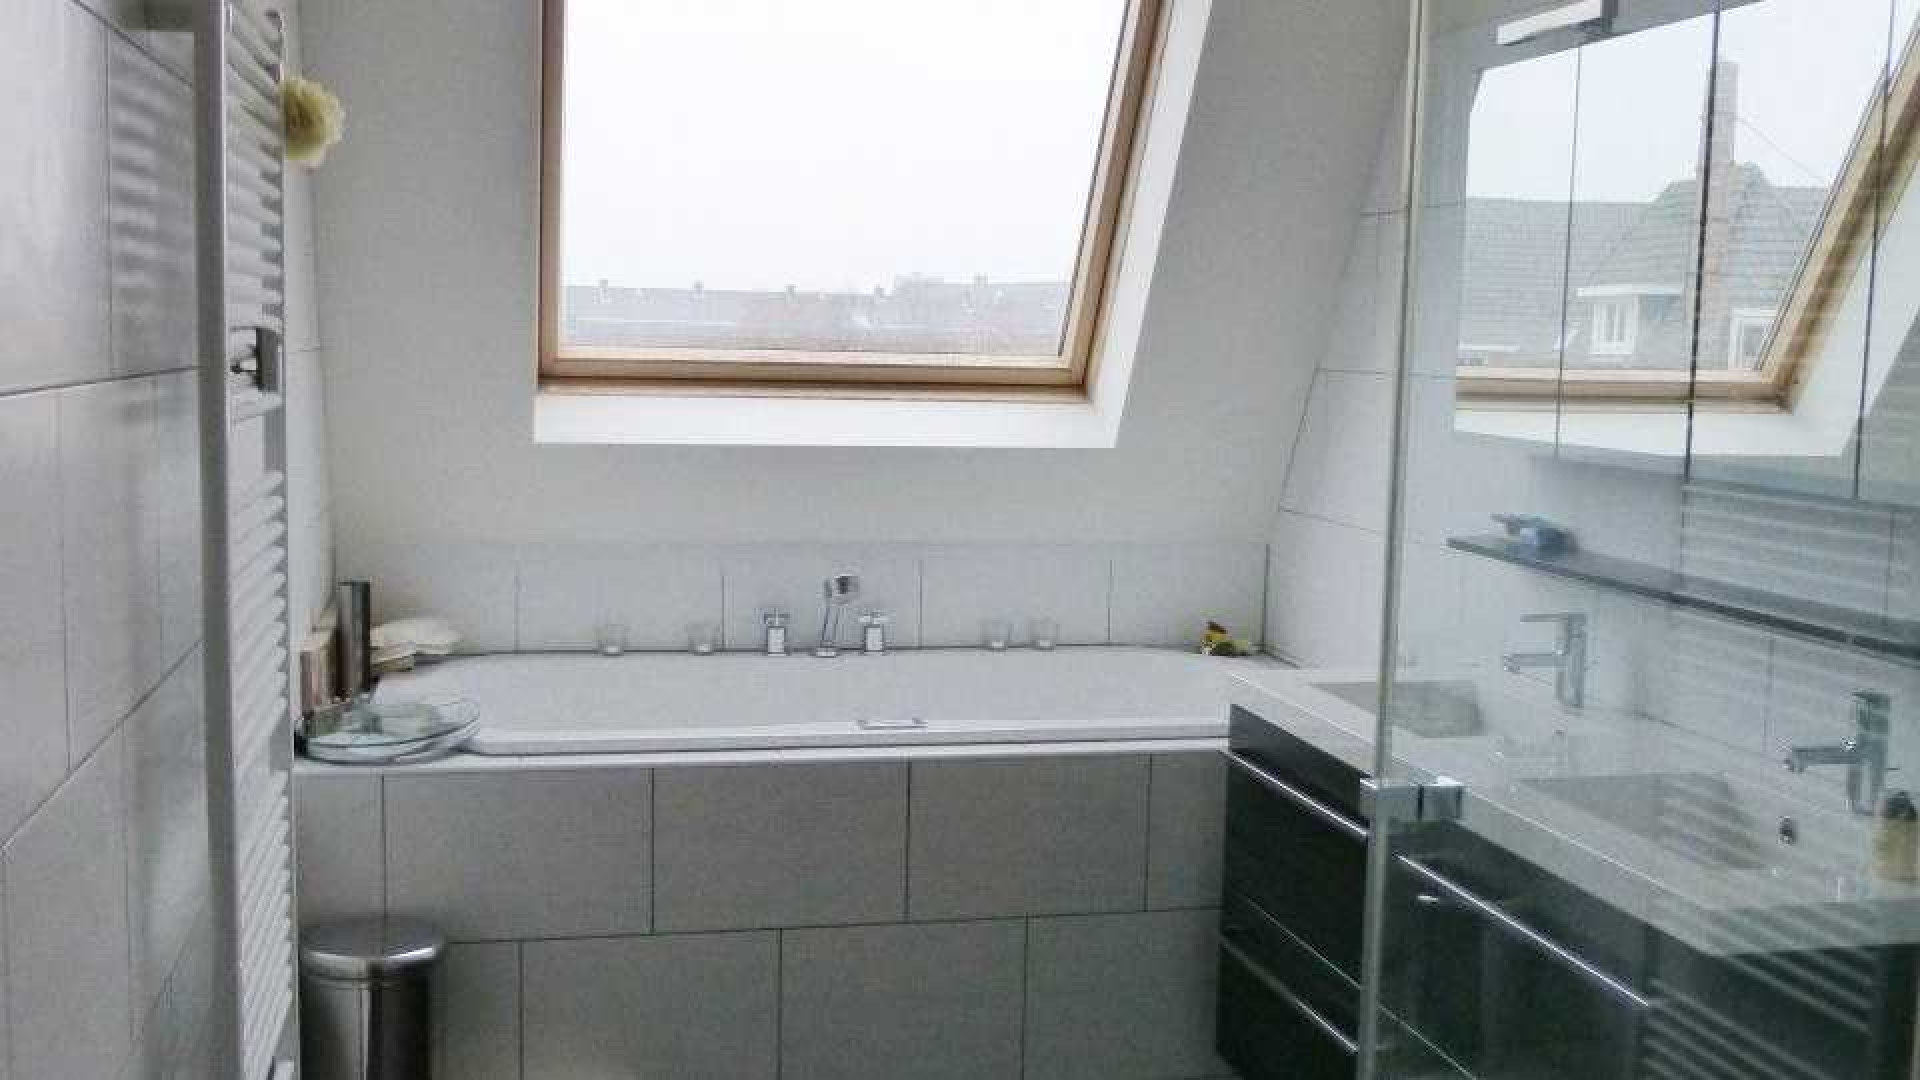 PSV voetballer Siem de Jong zet zijn appartement in Amsterdam Oud Zuid te huur. Zie foto's